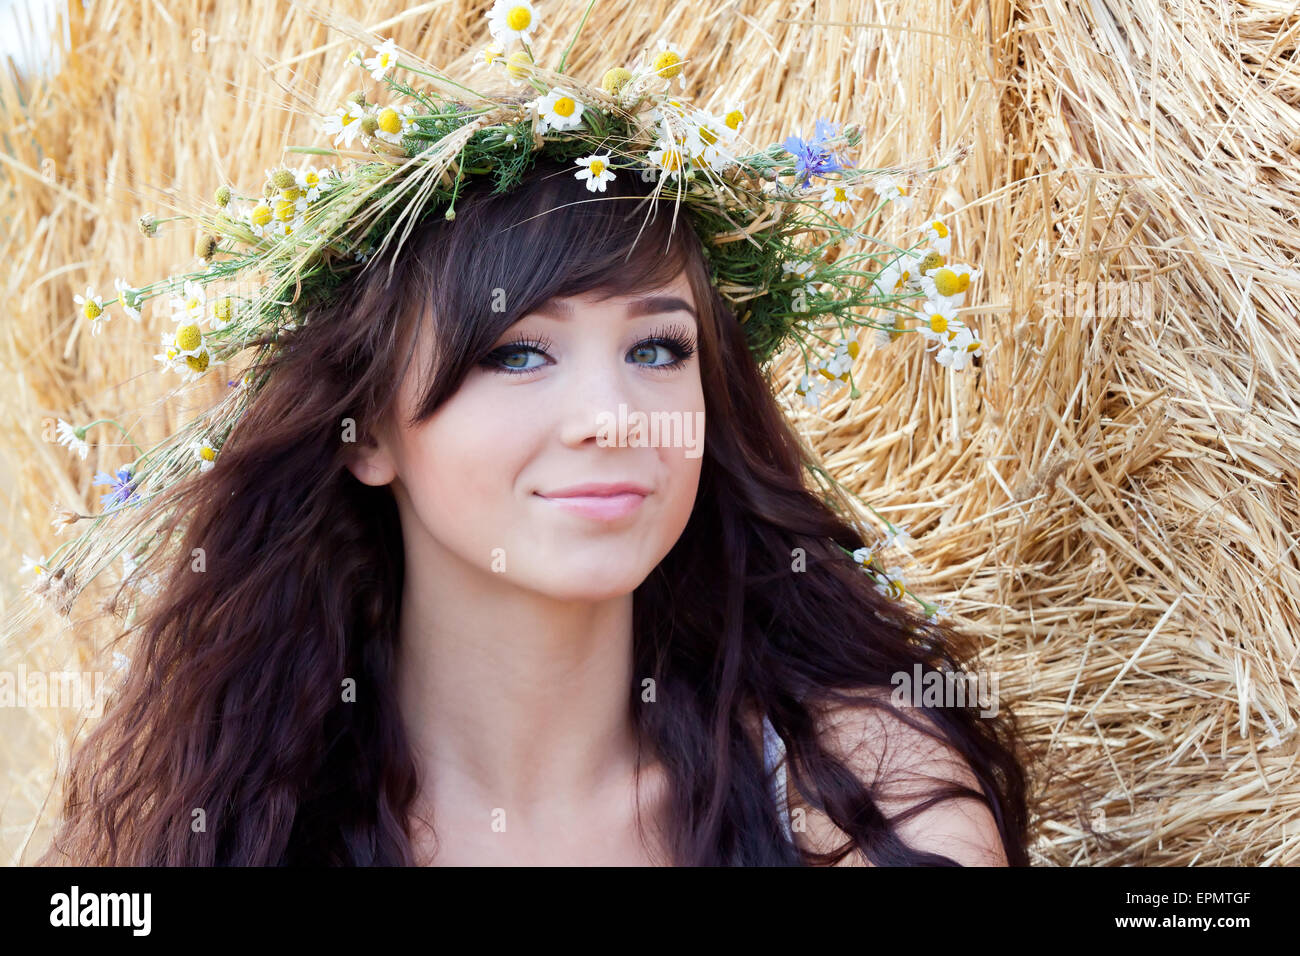 Sommer-Porträt von einem netten Mädchen in einen Kranz aus Blumen Stockfoto